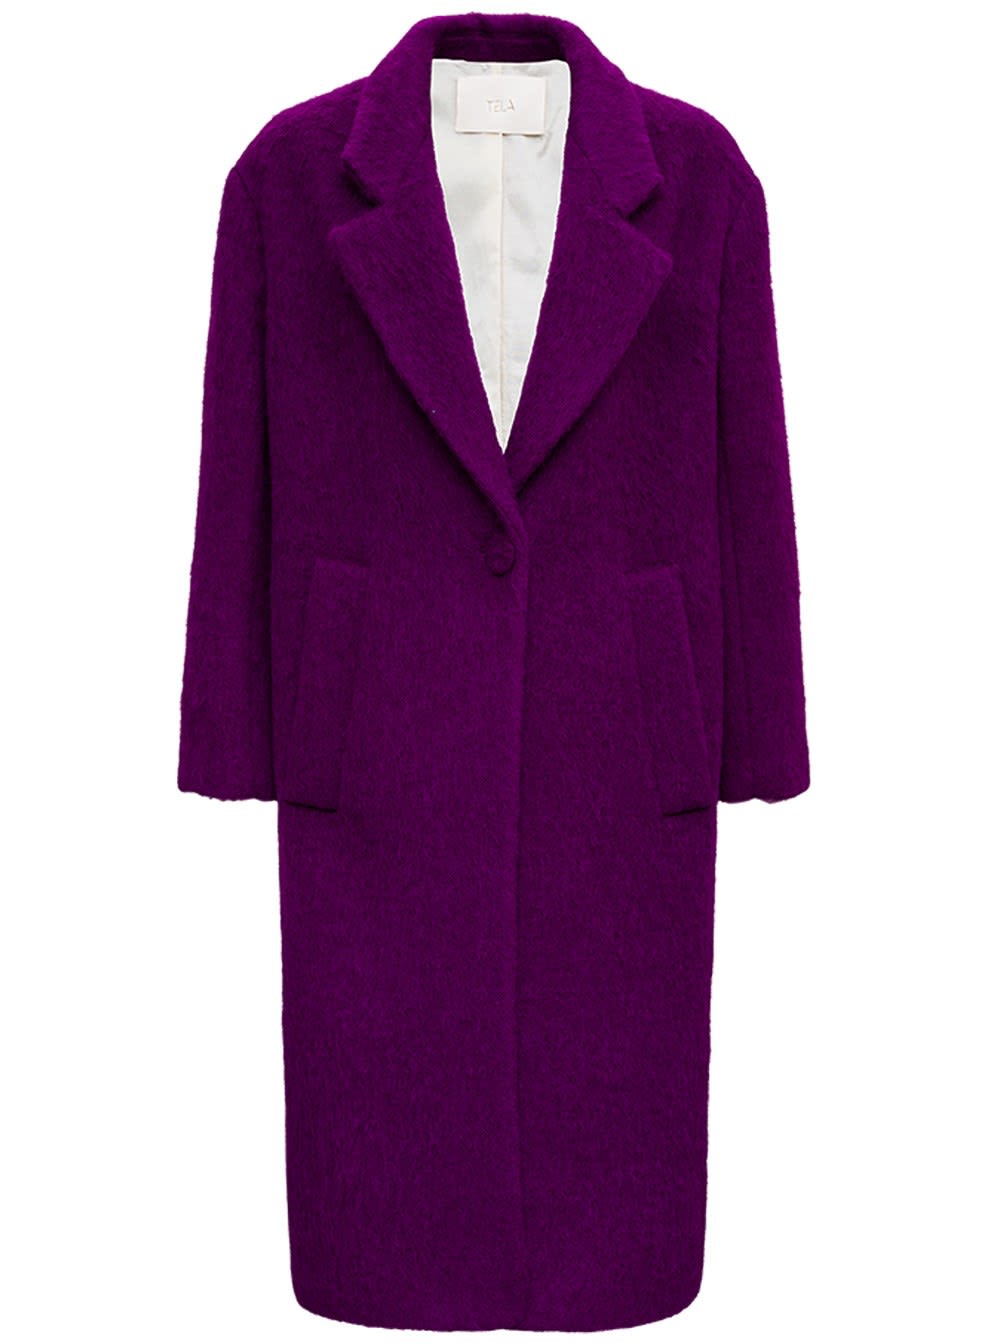 Tela Purple Glam Coat In Wool Blend